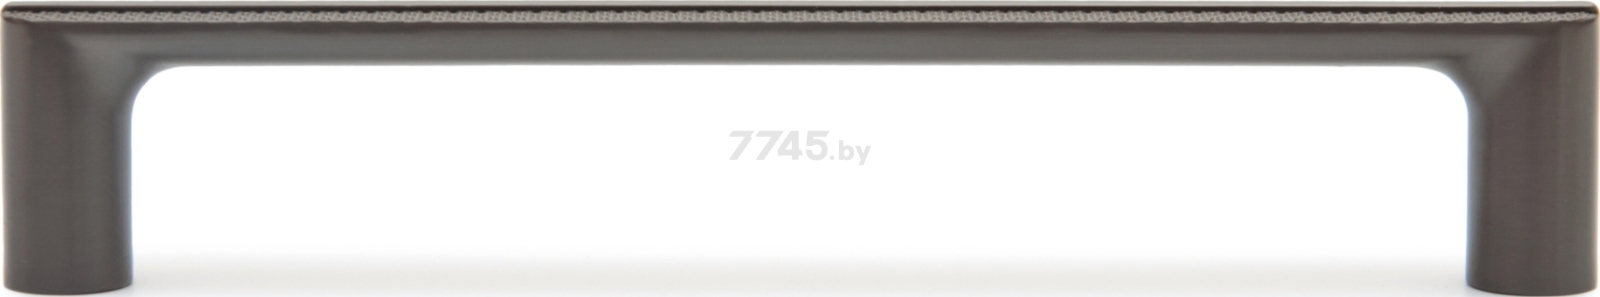 Ручка мебельная скоба BOYARD Factura RS320MBDN.5/160 матовый брашированный темный никель - Фото 2